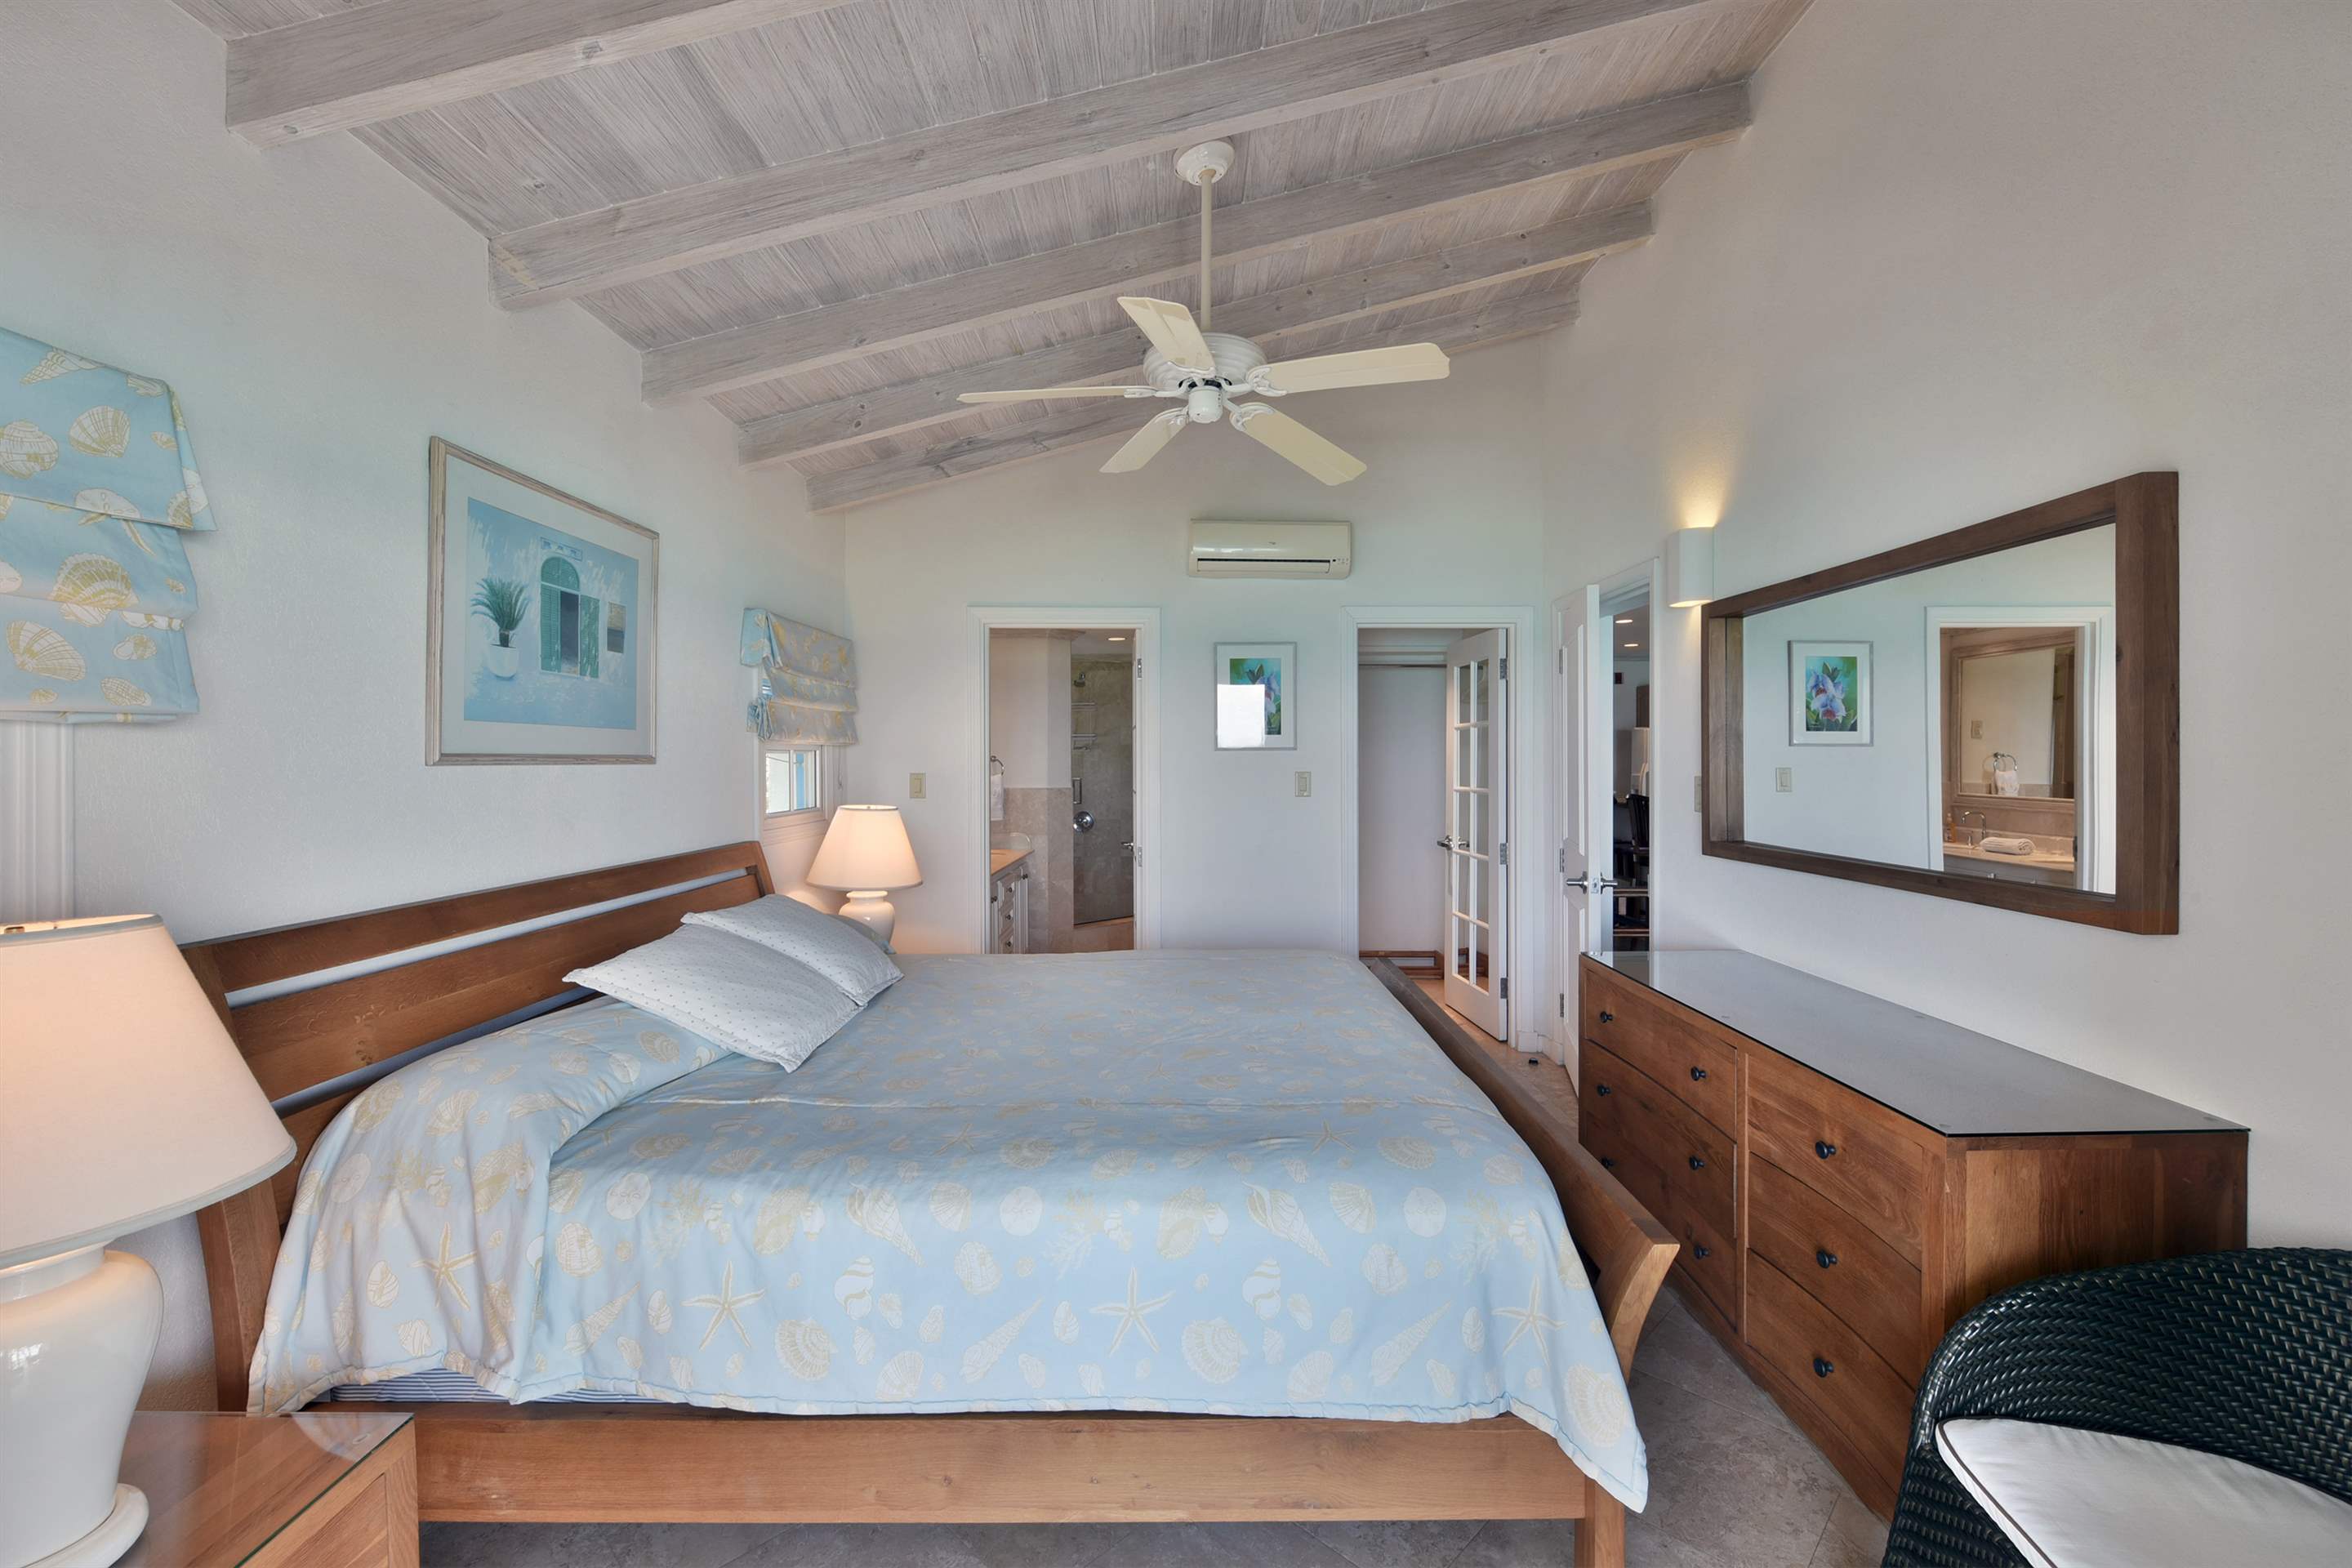 Maxwell Beach Villas 501, 2 bedroom, 2 bedroom villa in St. Lawrence Gap & South Coast, Barbados Photo #13